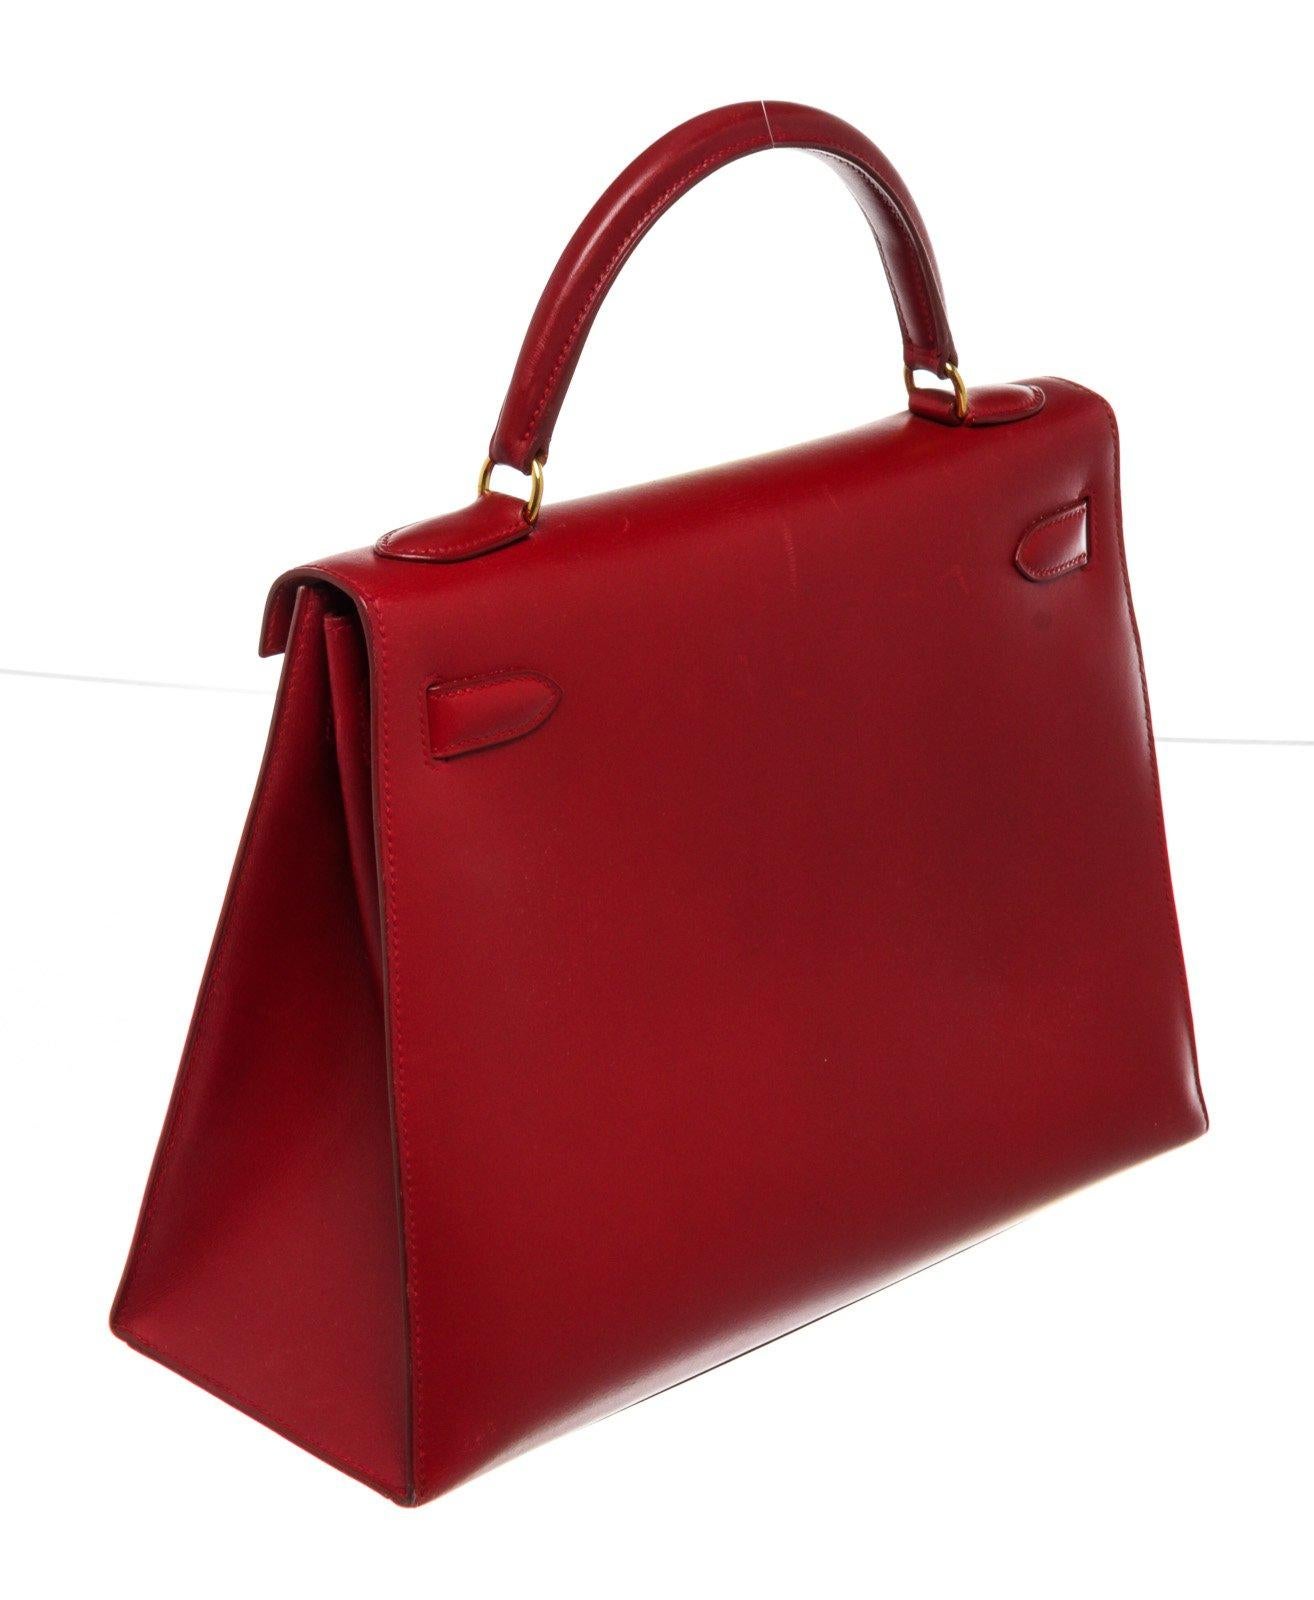 Hermes Red Leather Kelly 32cm Handbag For Sale 1